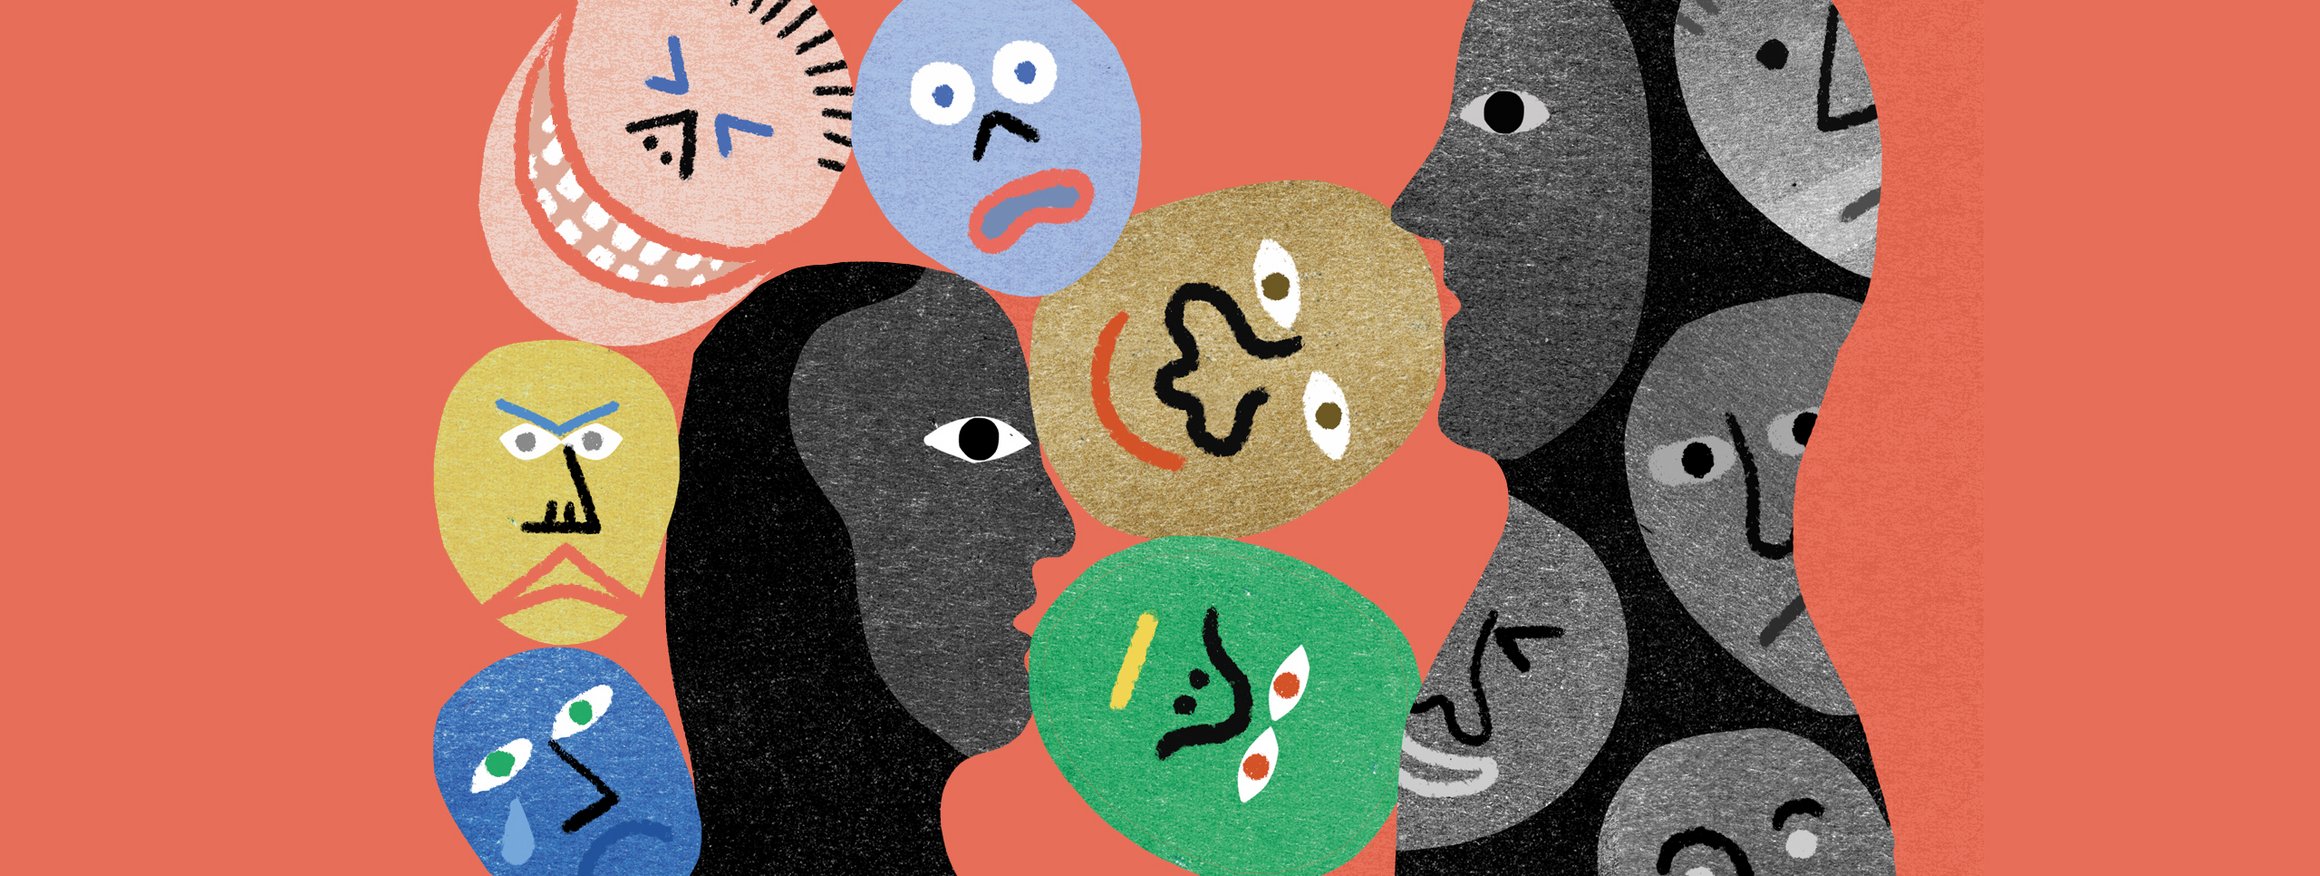 Die Illustration zeigt zwei dunkle Figuren, von denen eine Figur graue Emojis in sich trägt und bei der anderen bunte Emojis um sie herumschwirren